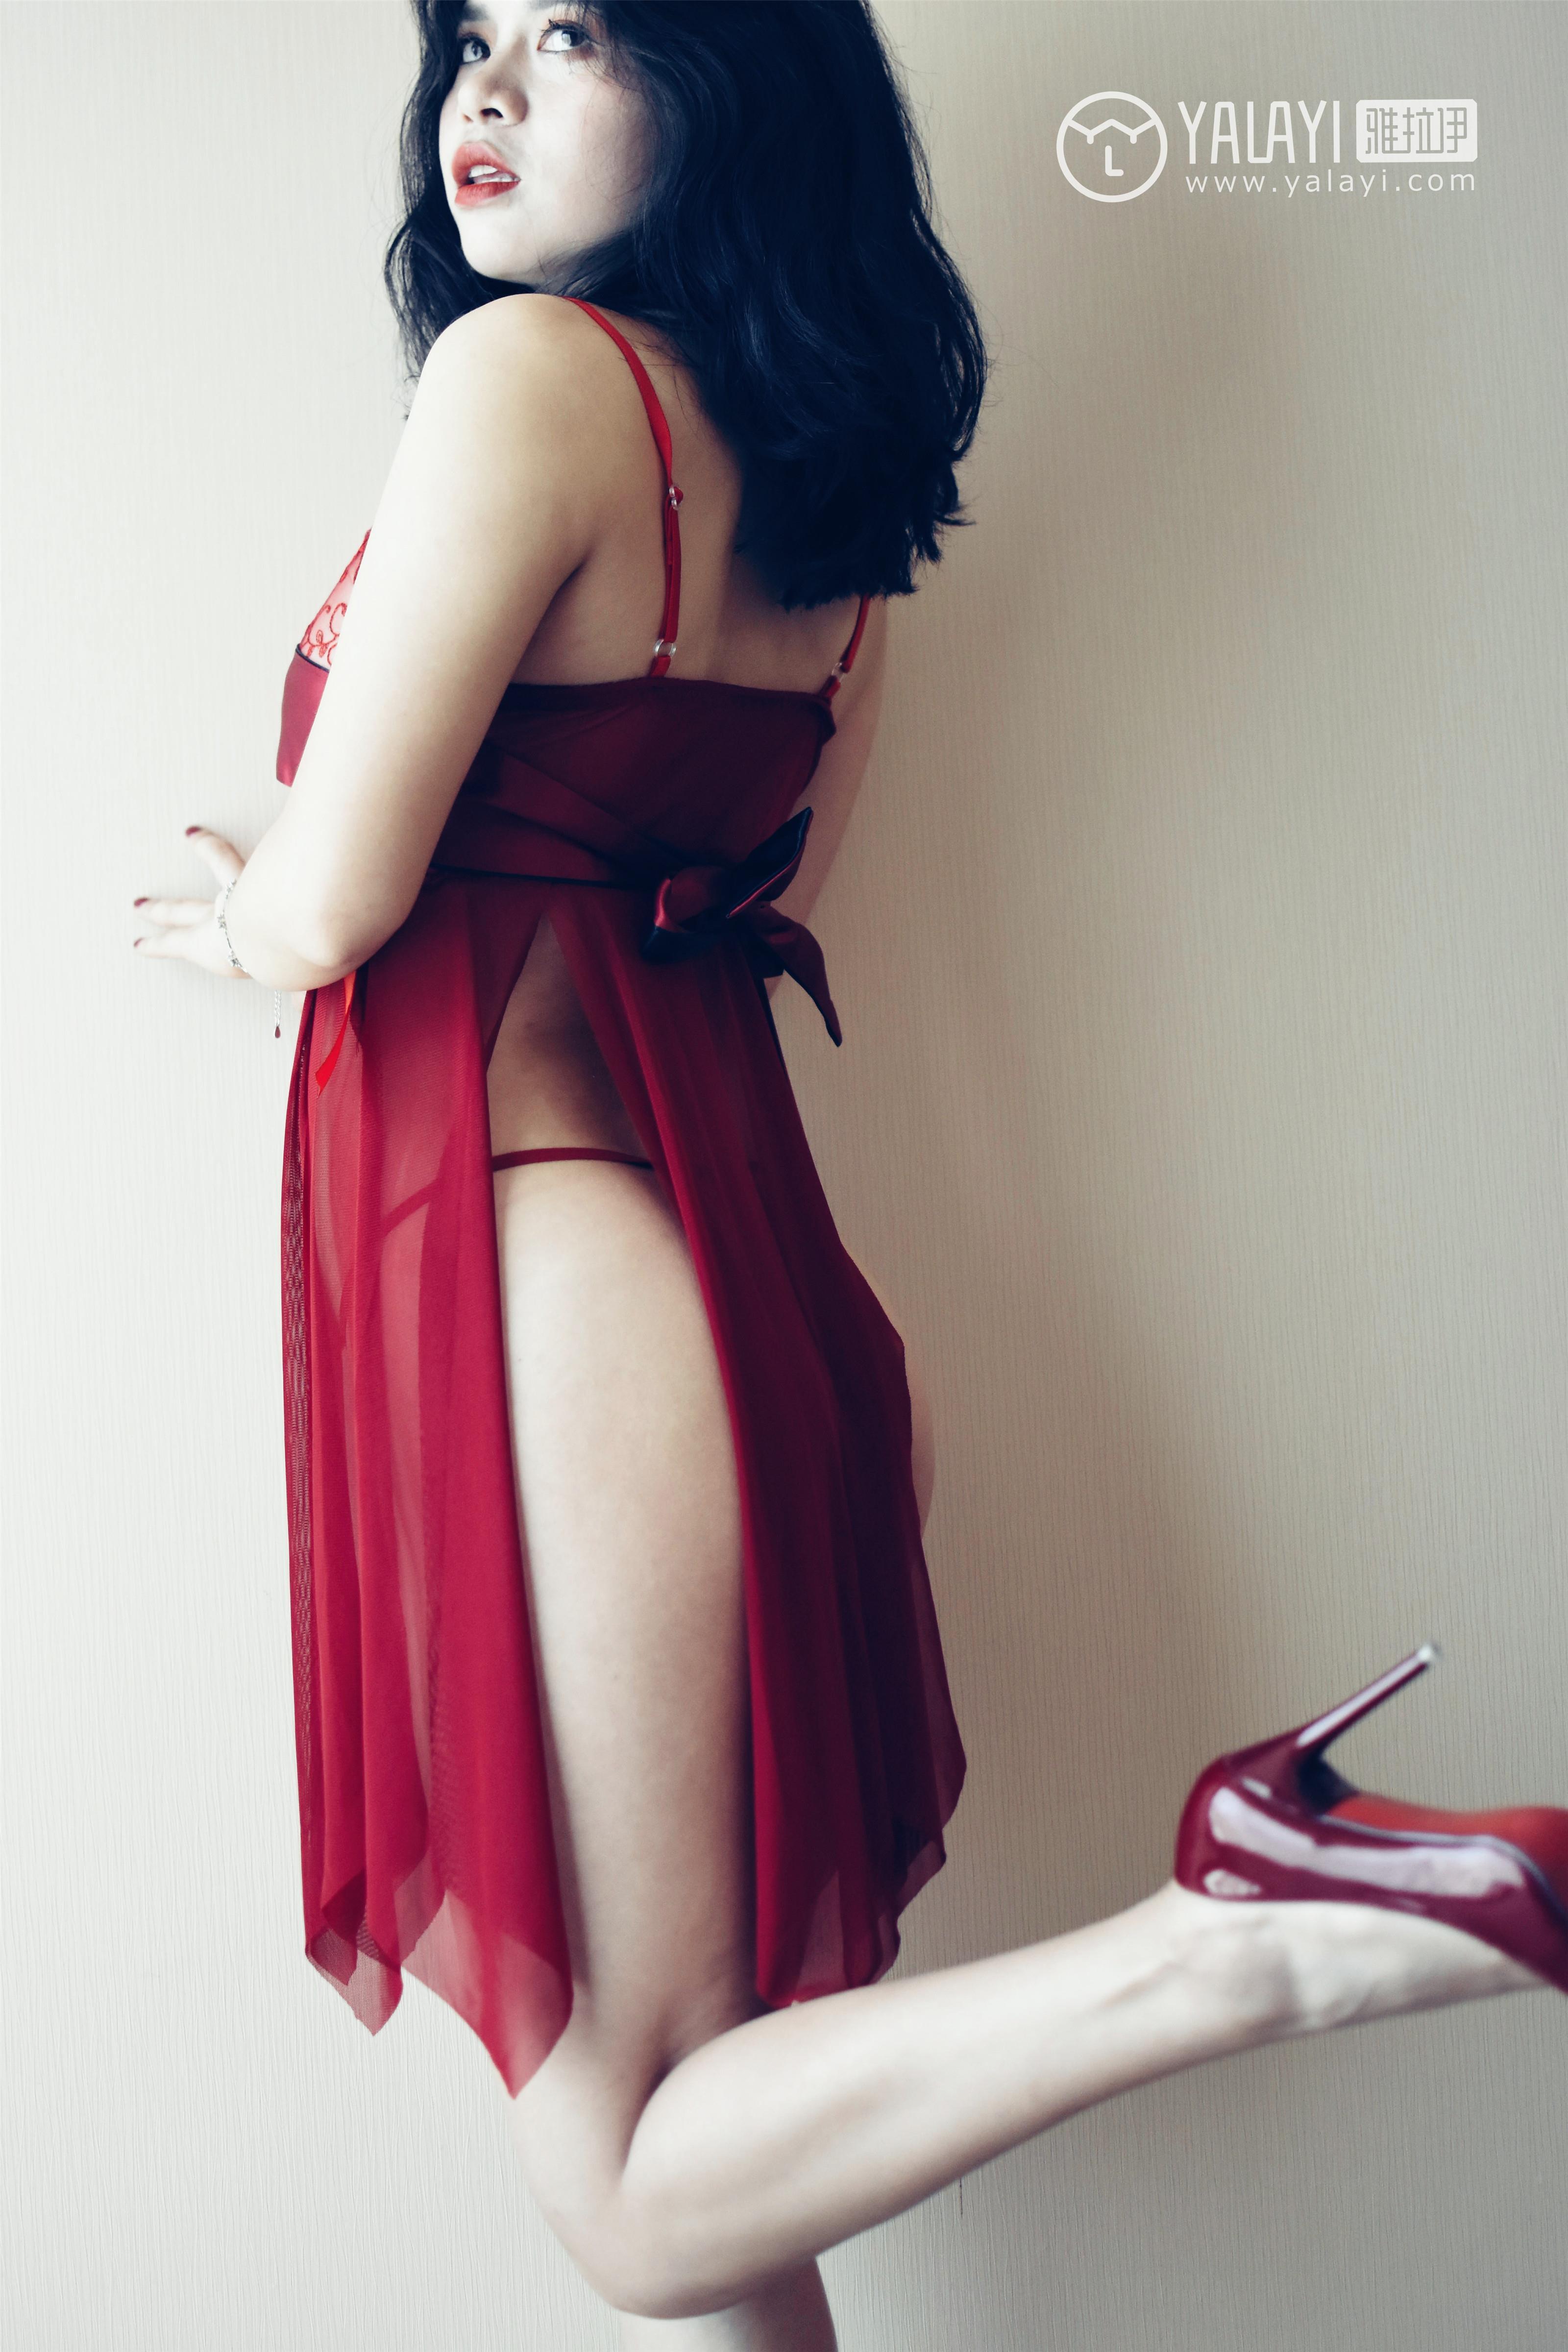 [YALAYI雅拉伊]NO.014 心蕊的红色睡袍 米心蕊 红色透视情趣睡衣性感私房写真集,